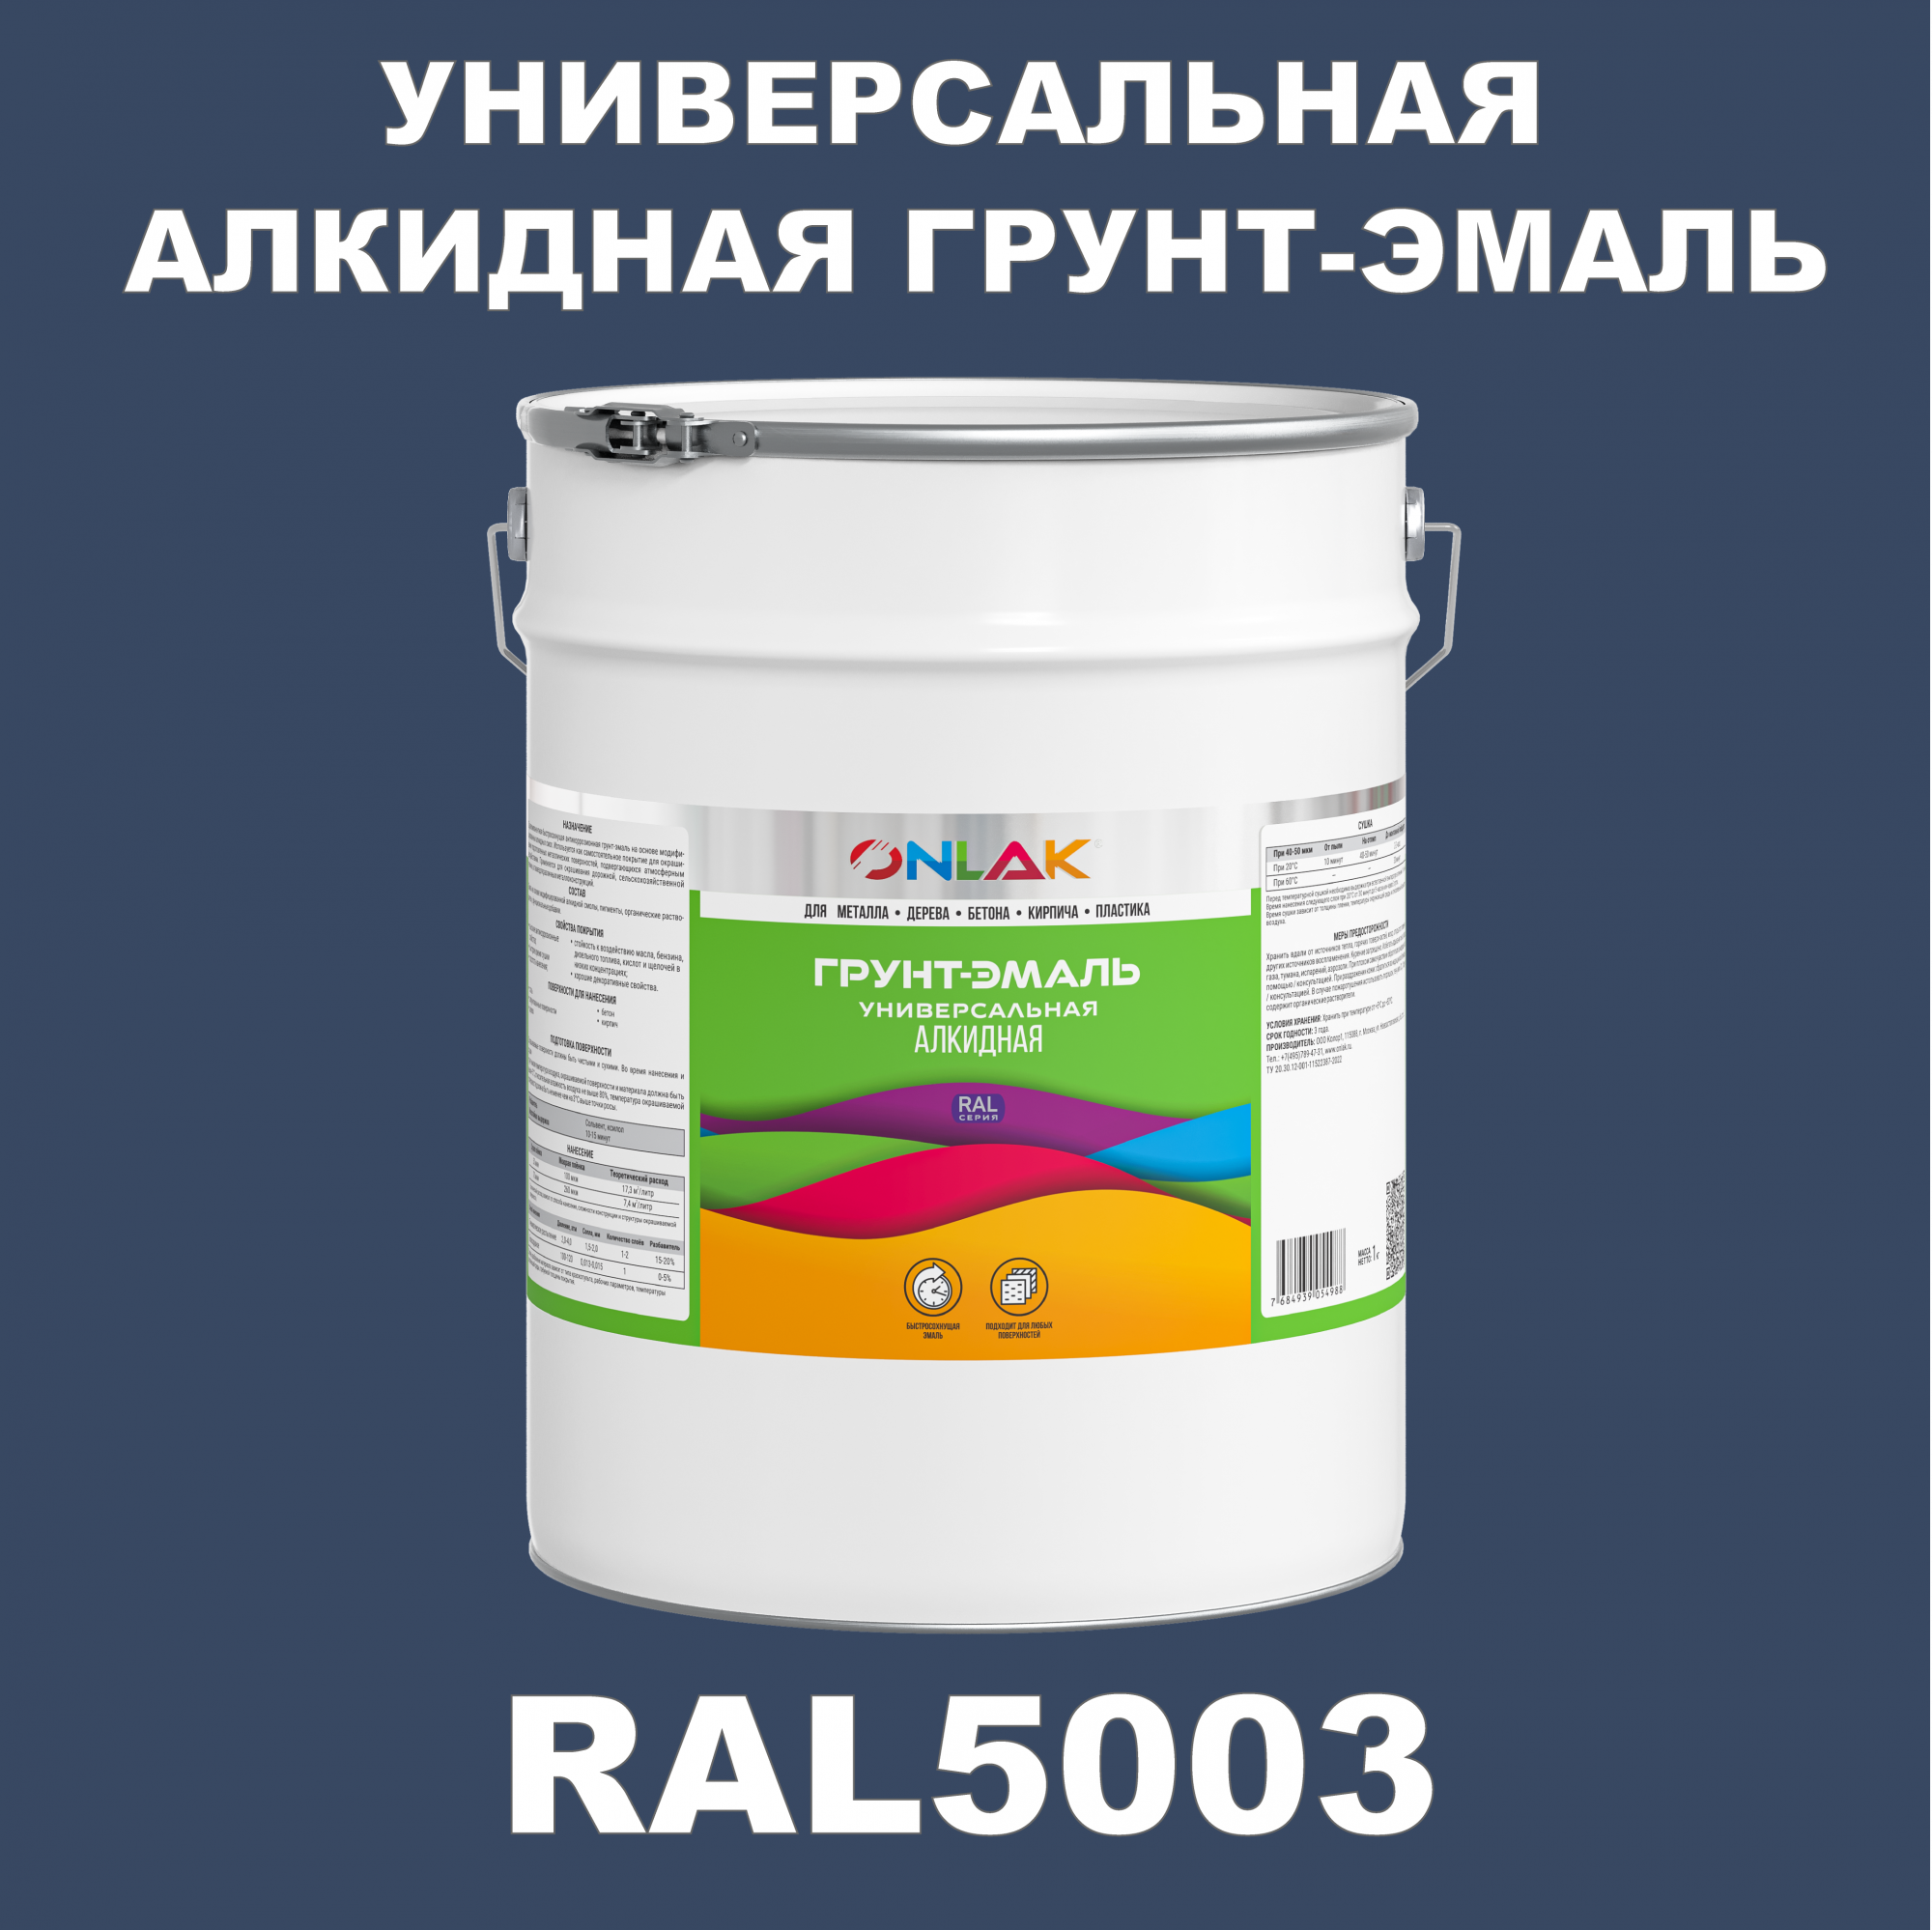 Грунт-эмаль ONLAK 1К RAL5003 антикоррозионная алкидная по металлу по ржавчине 20 кг